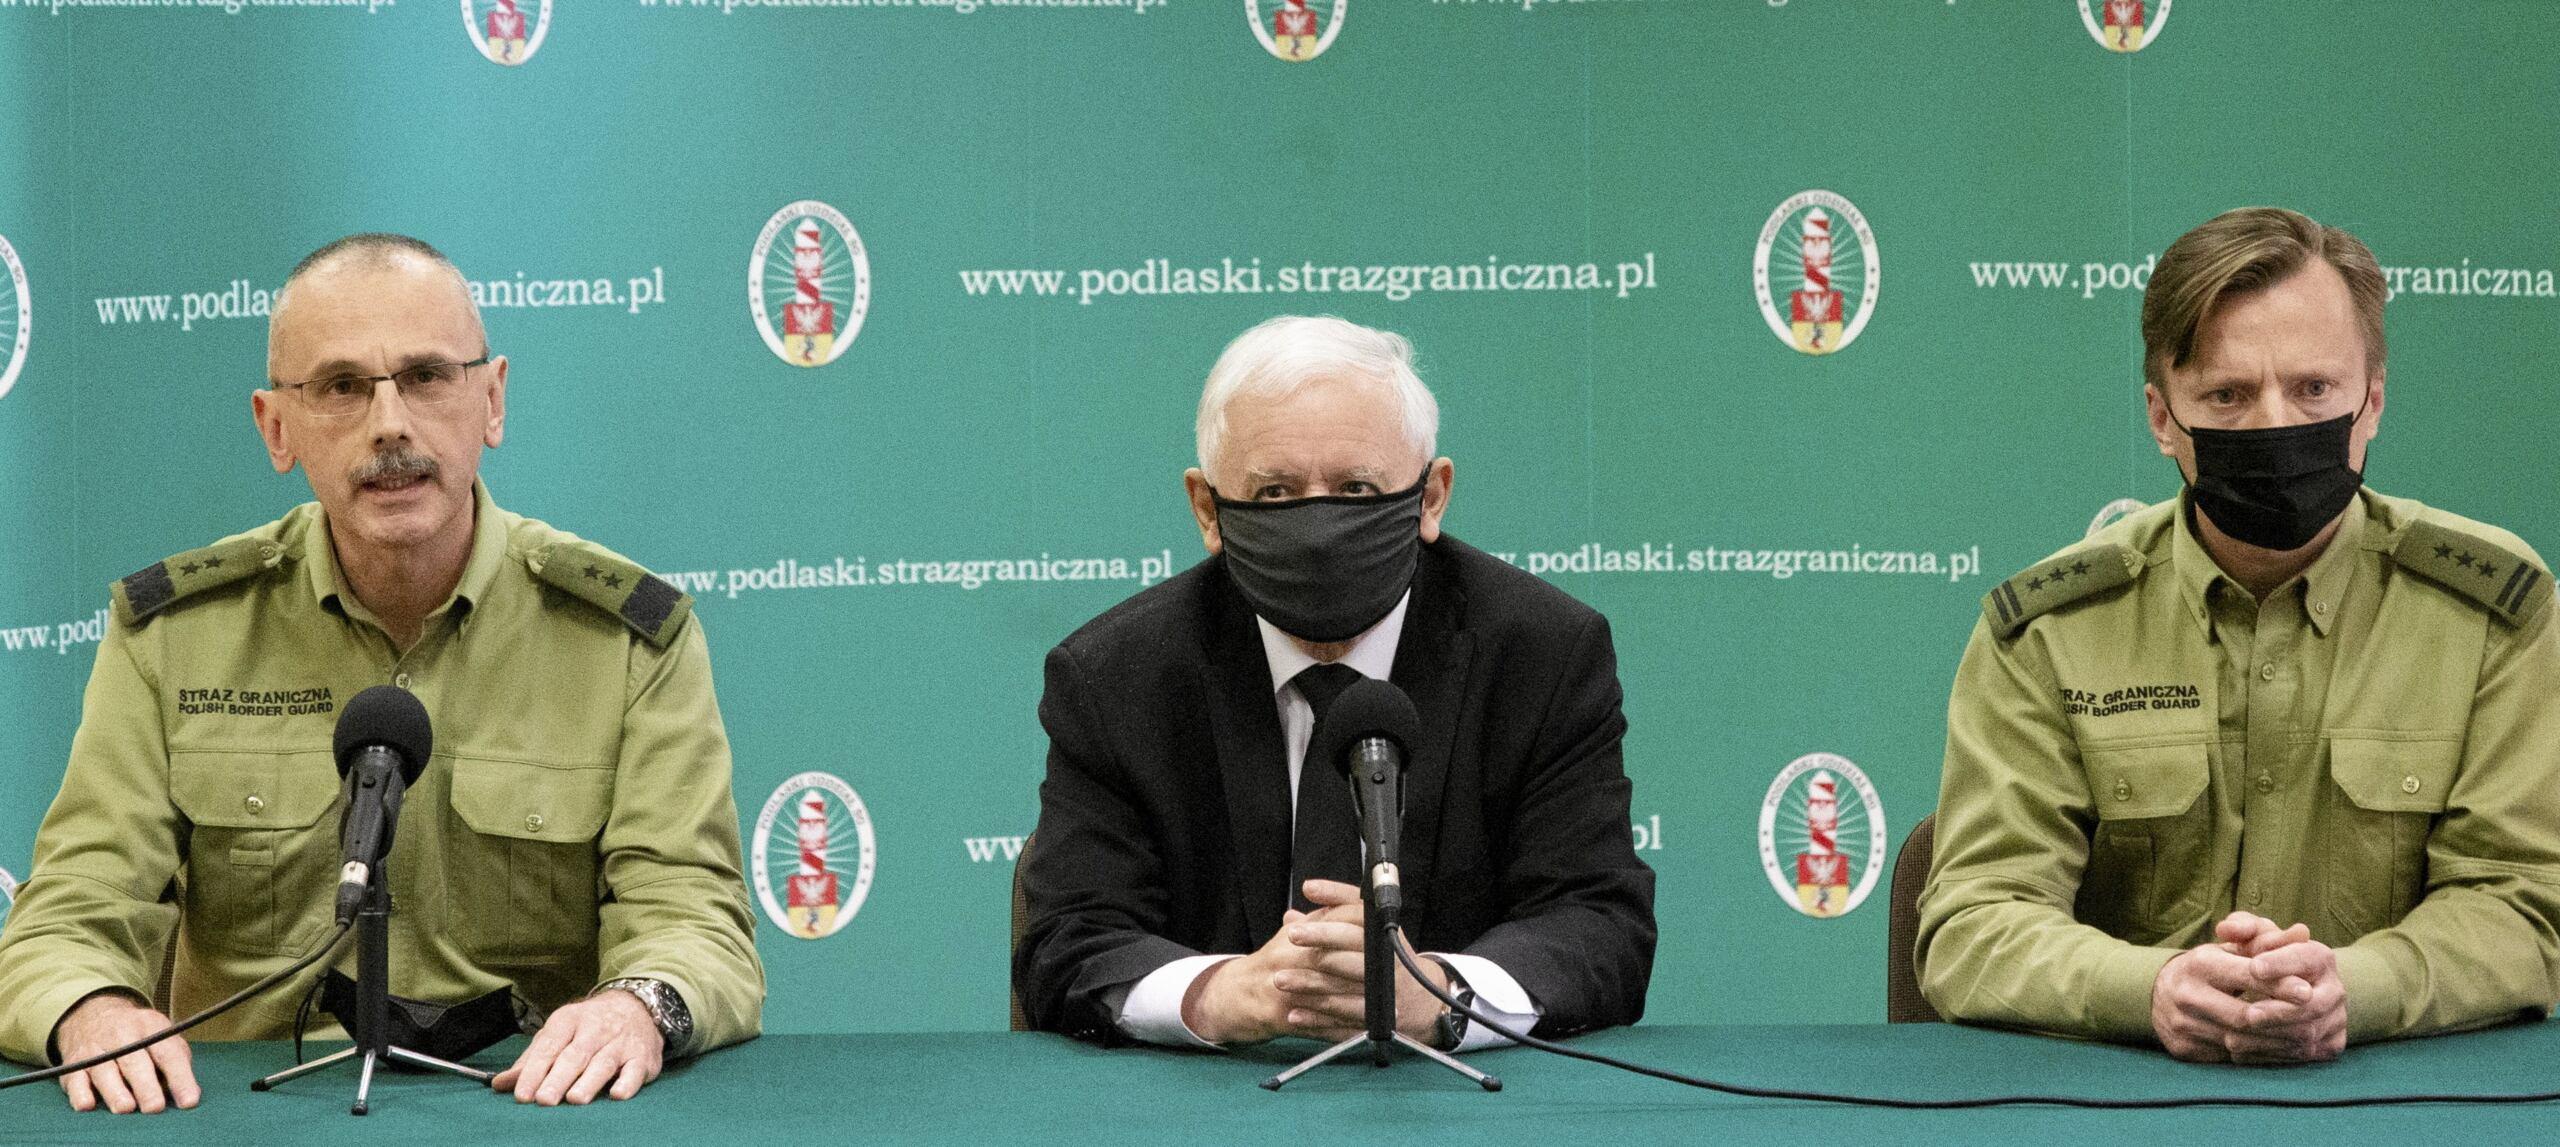 Kaczynski i straż graniczna na konferencji prasowej